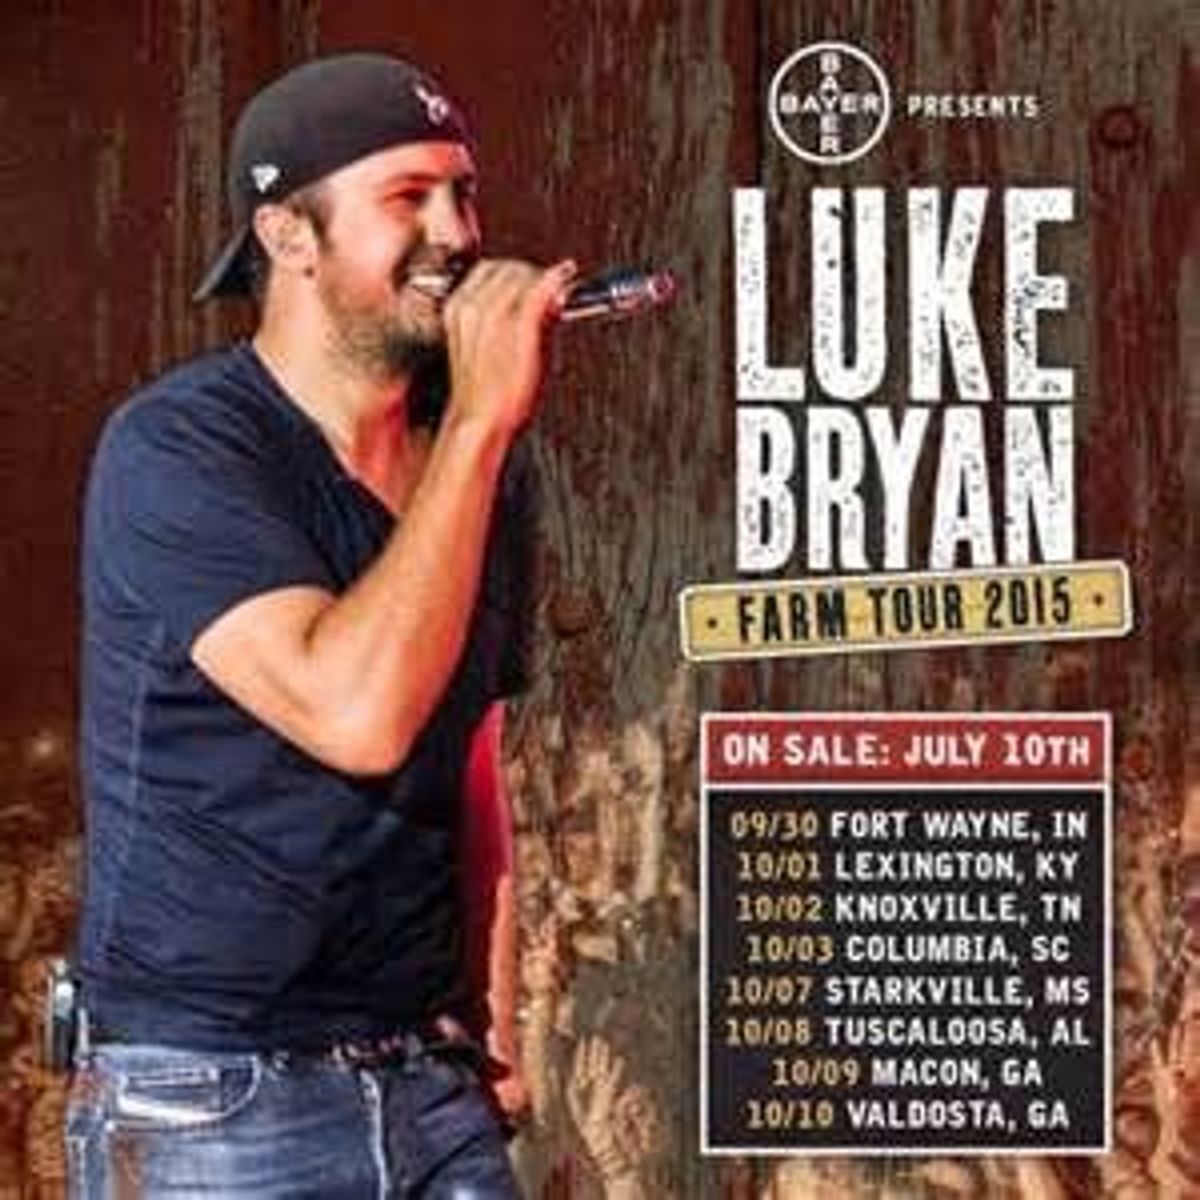 Luke Bryan 2015 Farm Tour: Concert Review